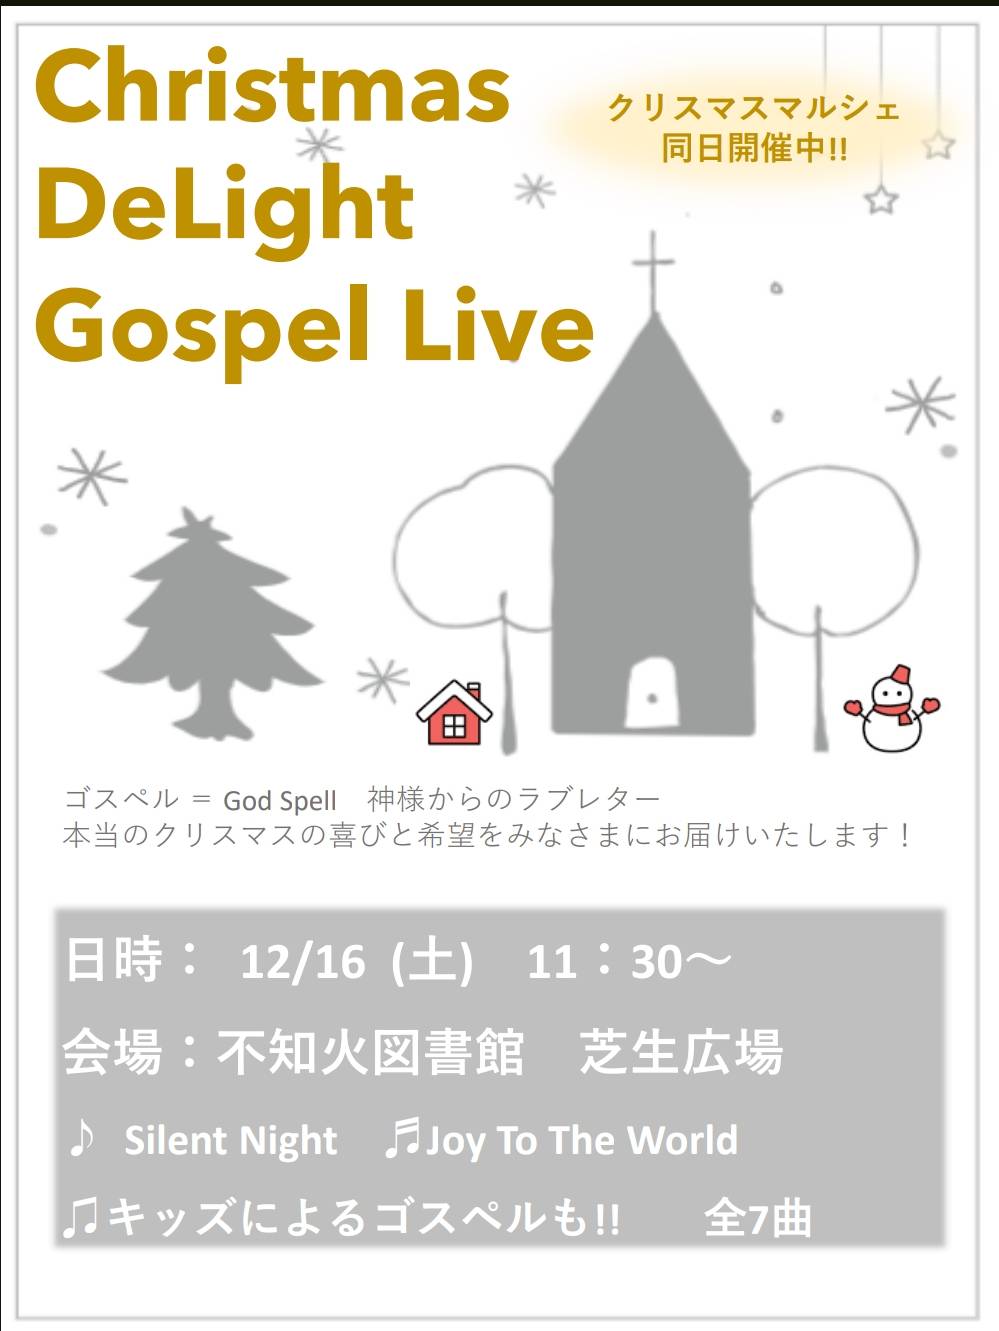 【開催中止】Christmas DeLight Gospel Live